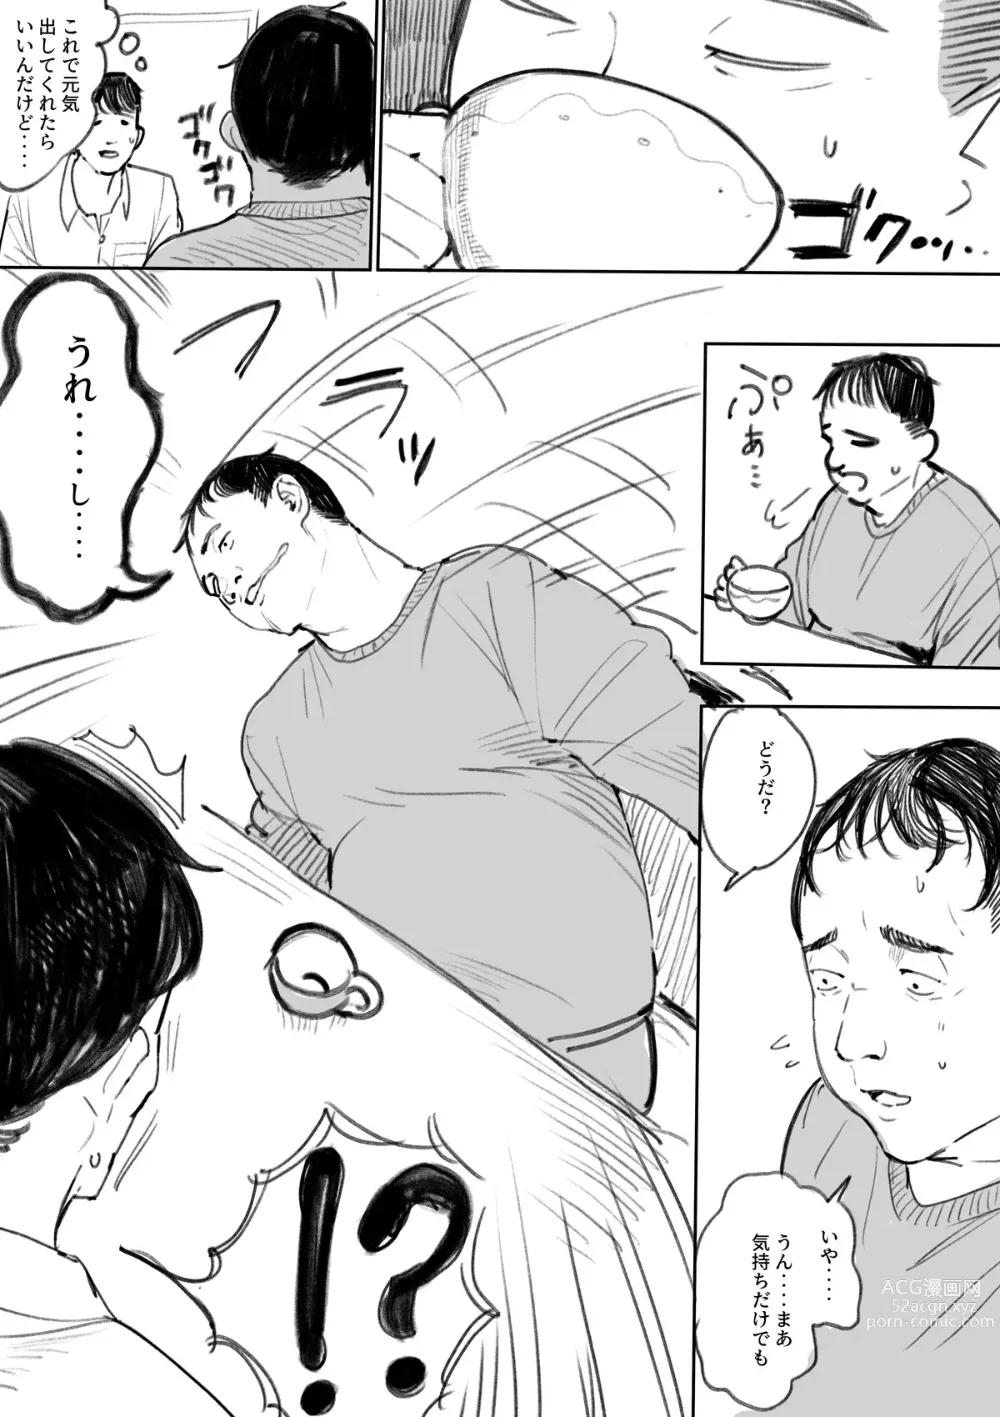 Page 3 of doujinshi Succubus-ka